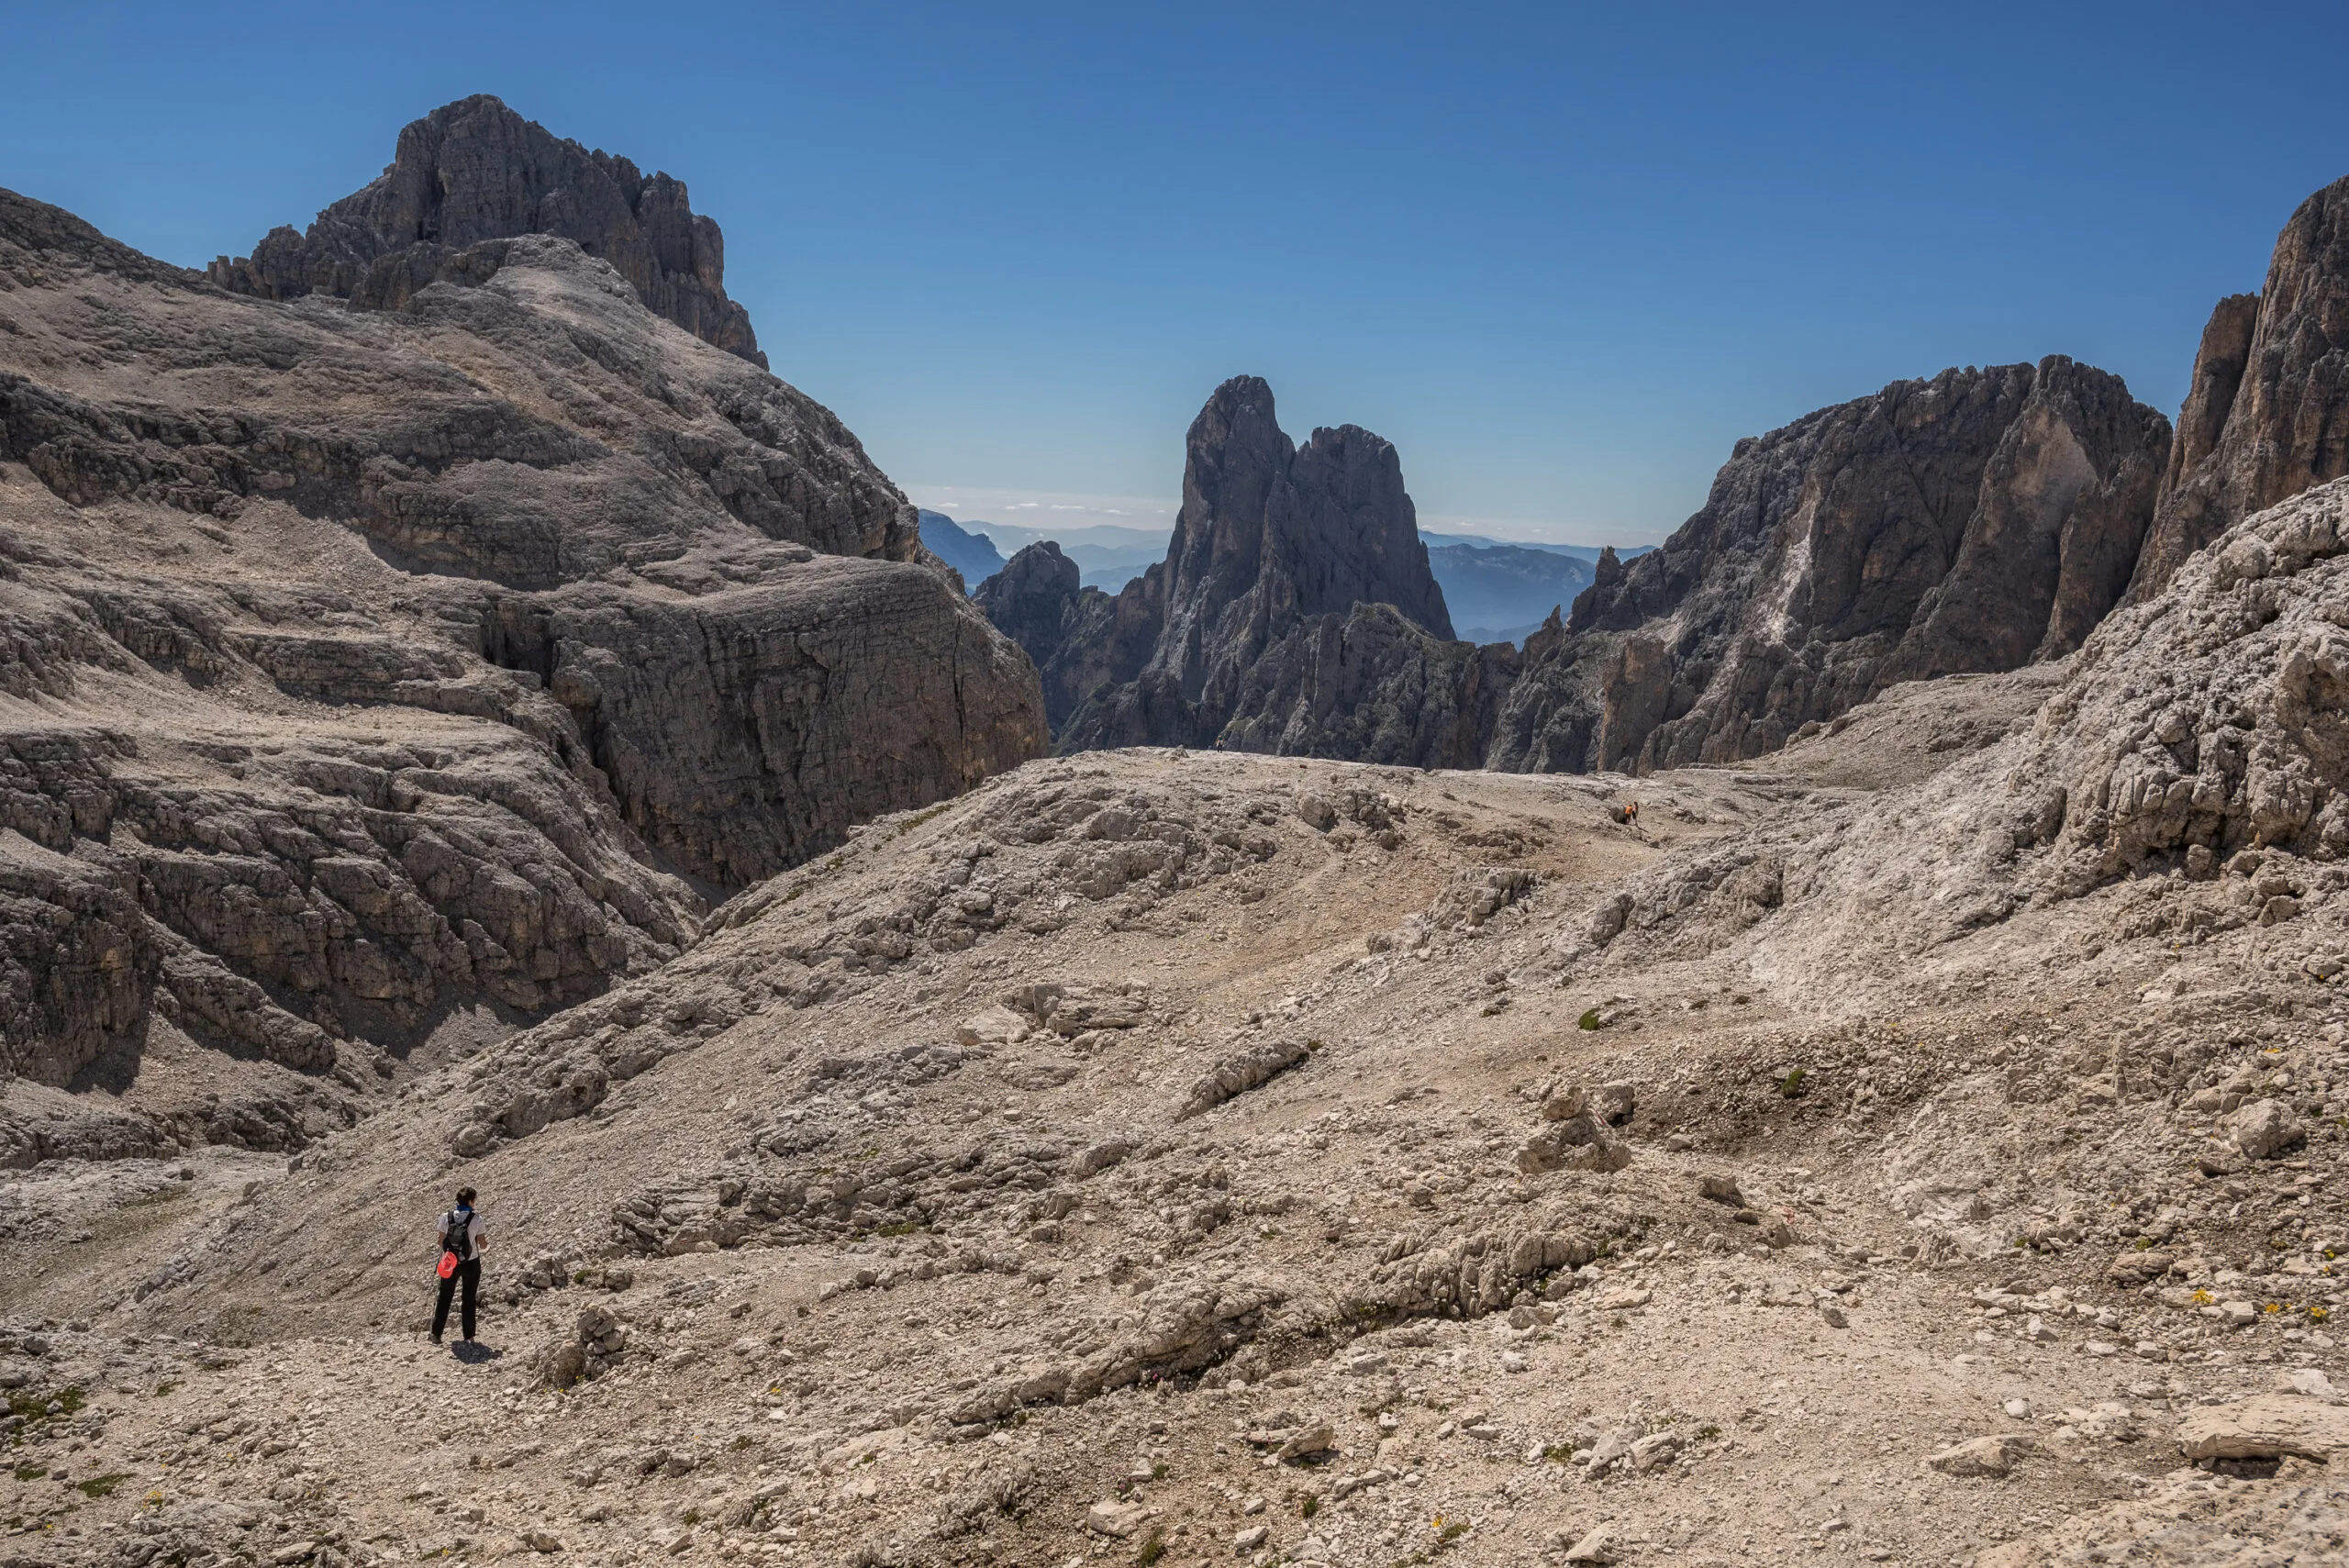 Вершины горной группы Пале-ди-Сан-Мартино (слева направо), Чима-Канали, Чимерло, Сасс-Маор, Чима-делла-Мадонна, вид с перевала Прадидали-Бассо, у подножия ледника Фрадуста, Доломиты, Италия.